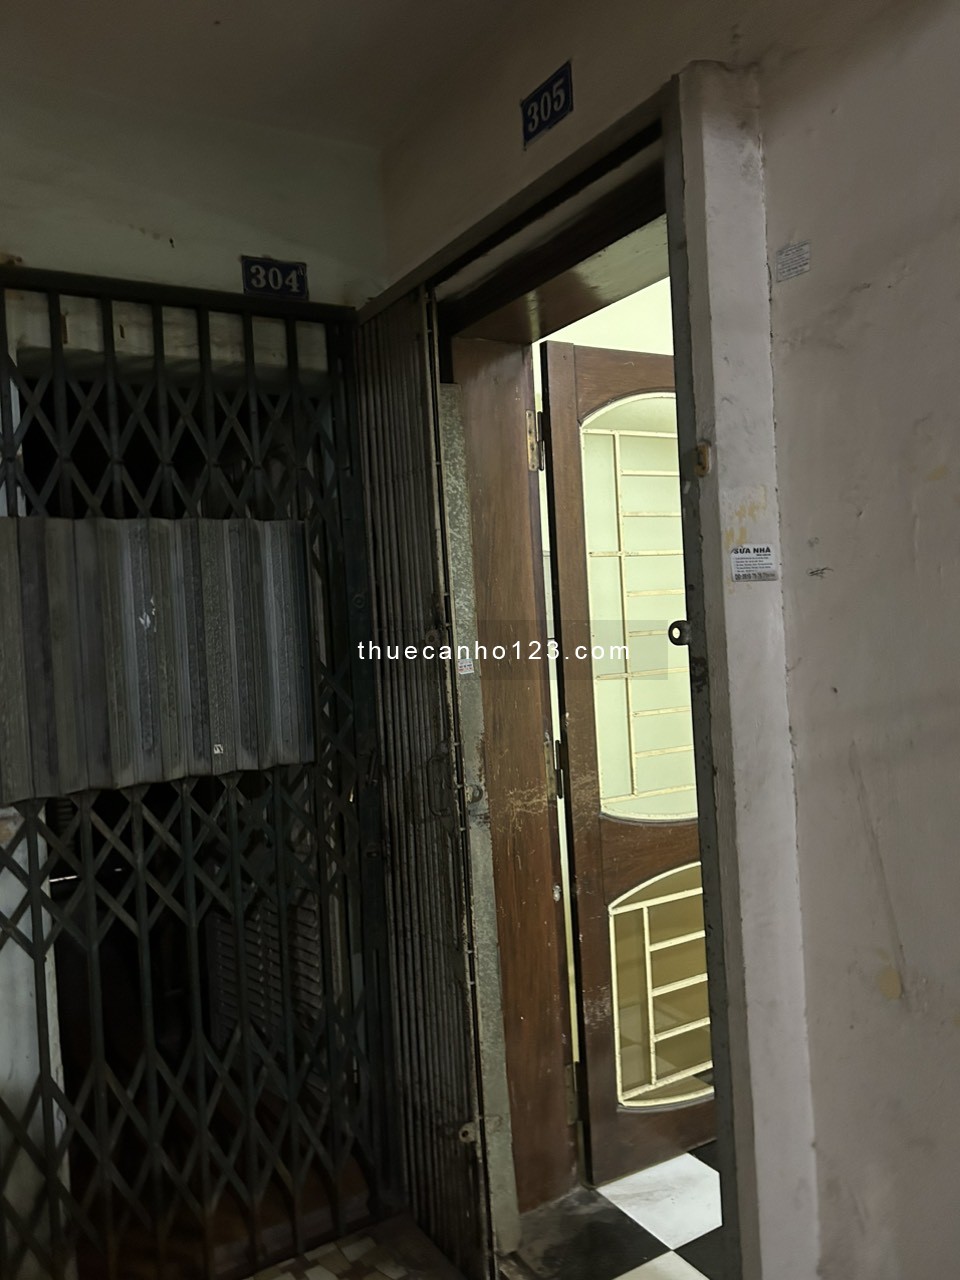 Chính chủ cần cho thuê căn hộ 305 (tầng 3) Nhà D2C tập thể Phương Mai, đường Lương Định Của, Đống Đa